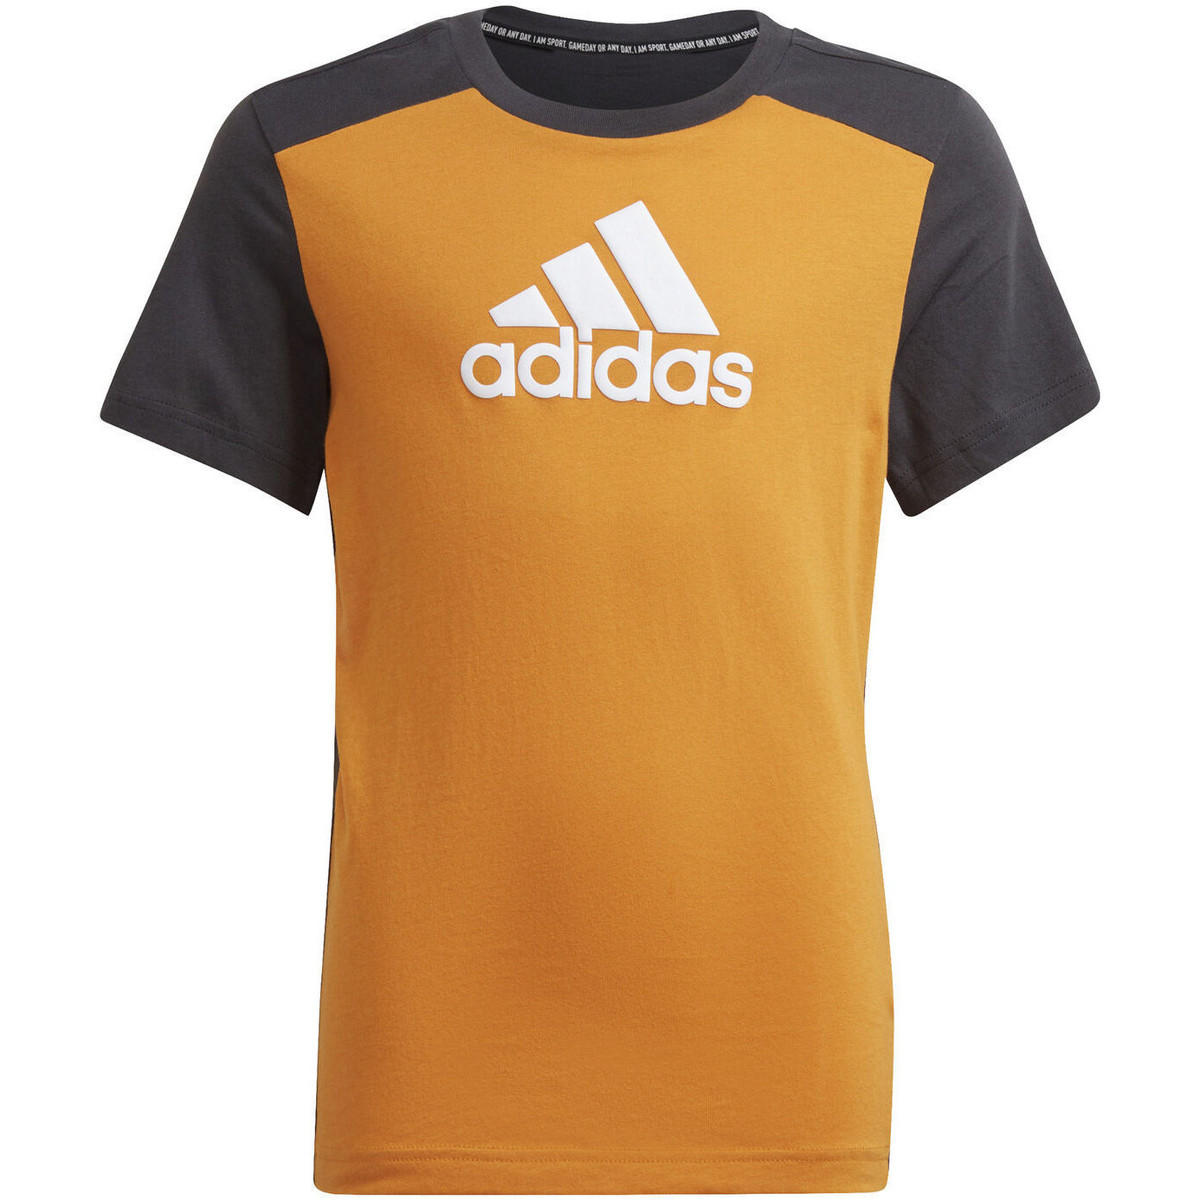 adidas Originals Orange T-shirt Logo cDTb32BG